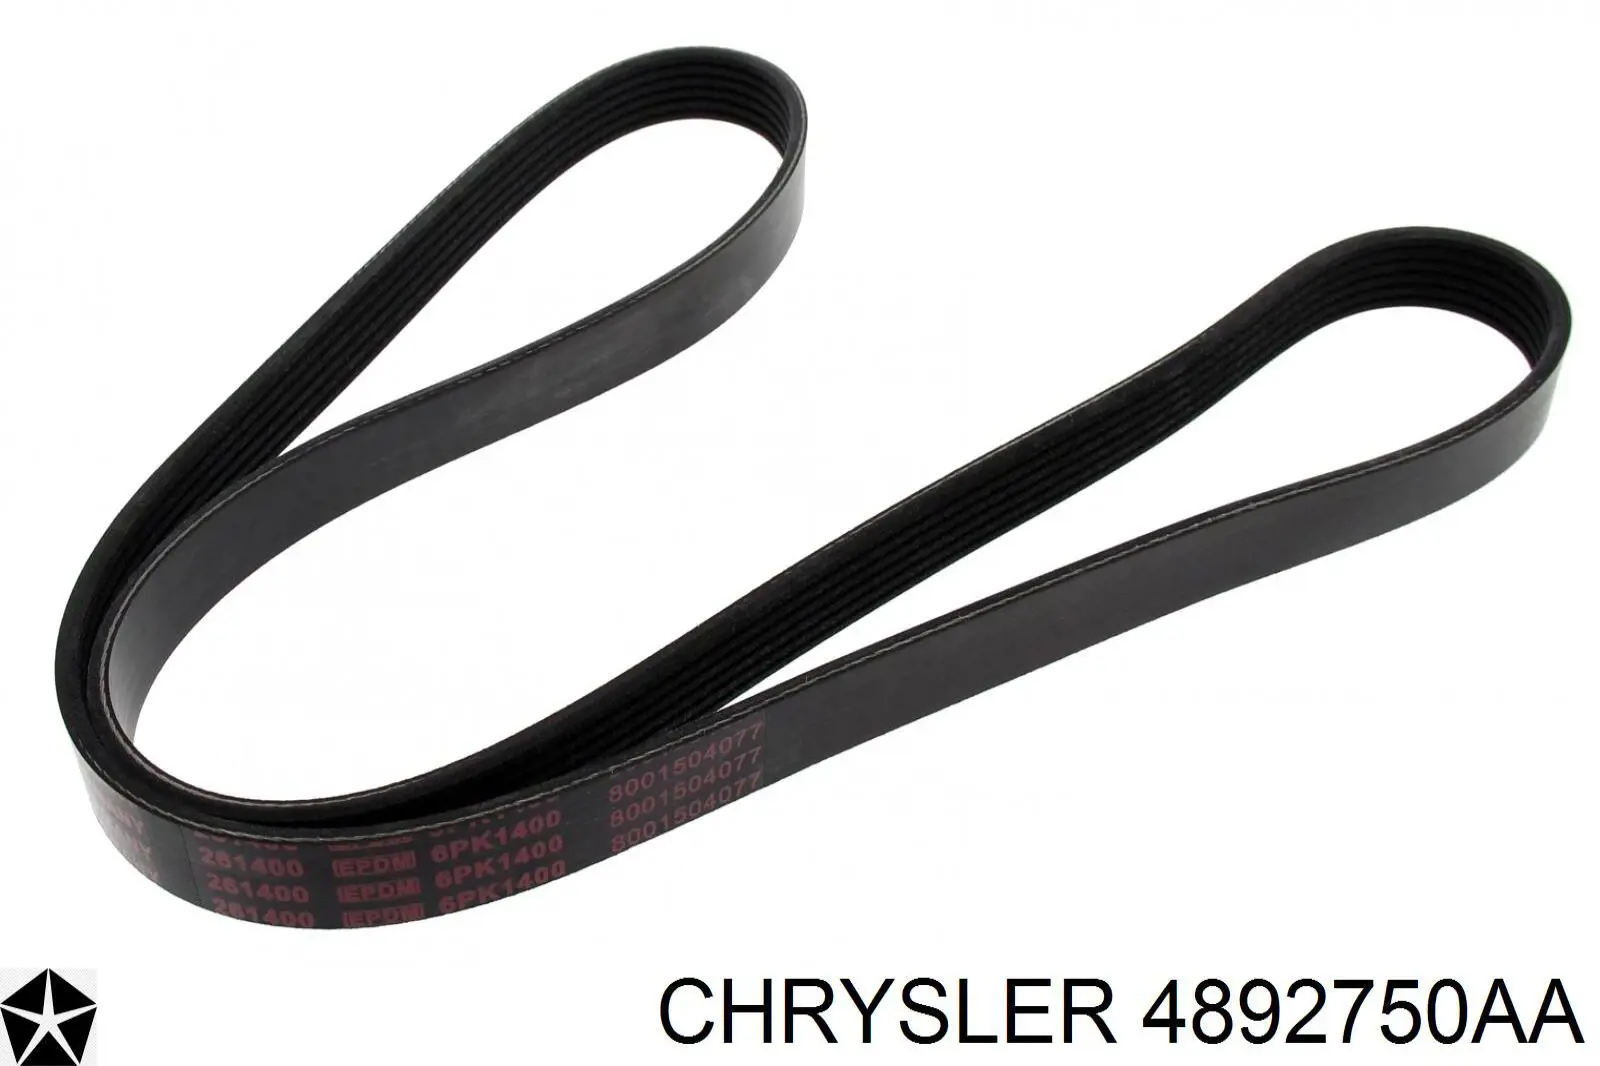 4892750AA Chrysler correa trapezoidal